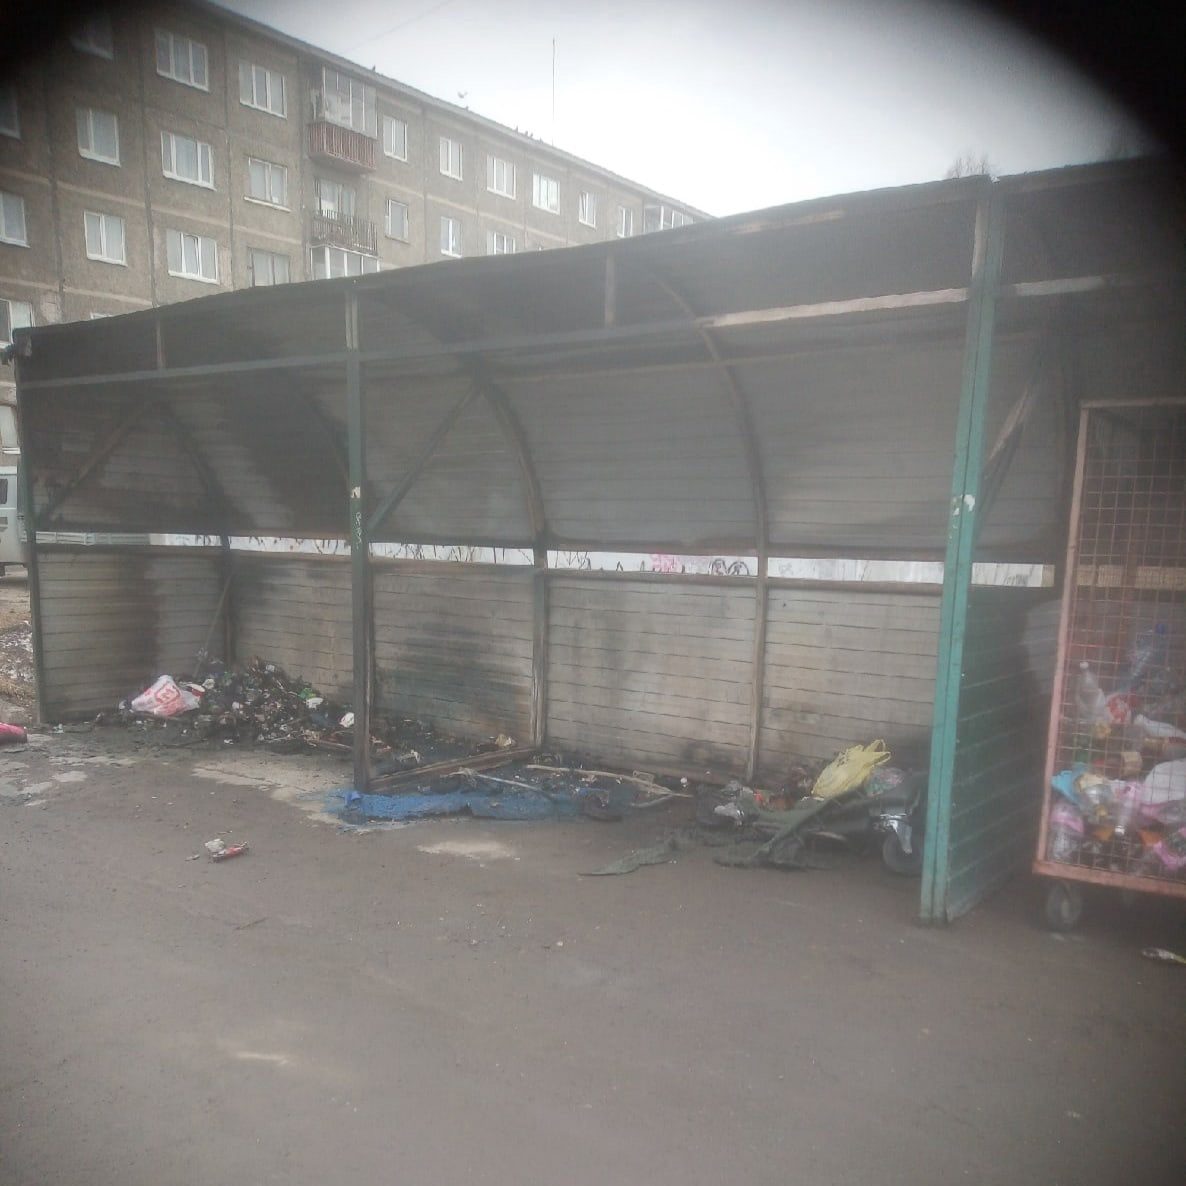 Жители улицы Вайнера потеряли мусорные баки. Оказалось, они сгорели .